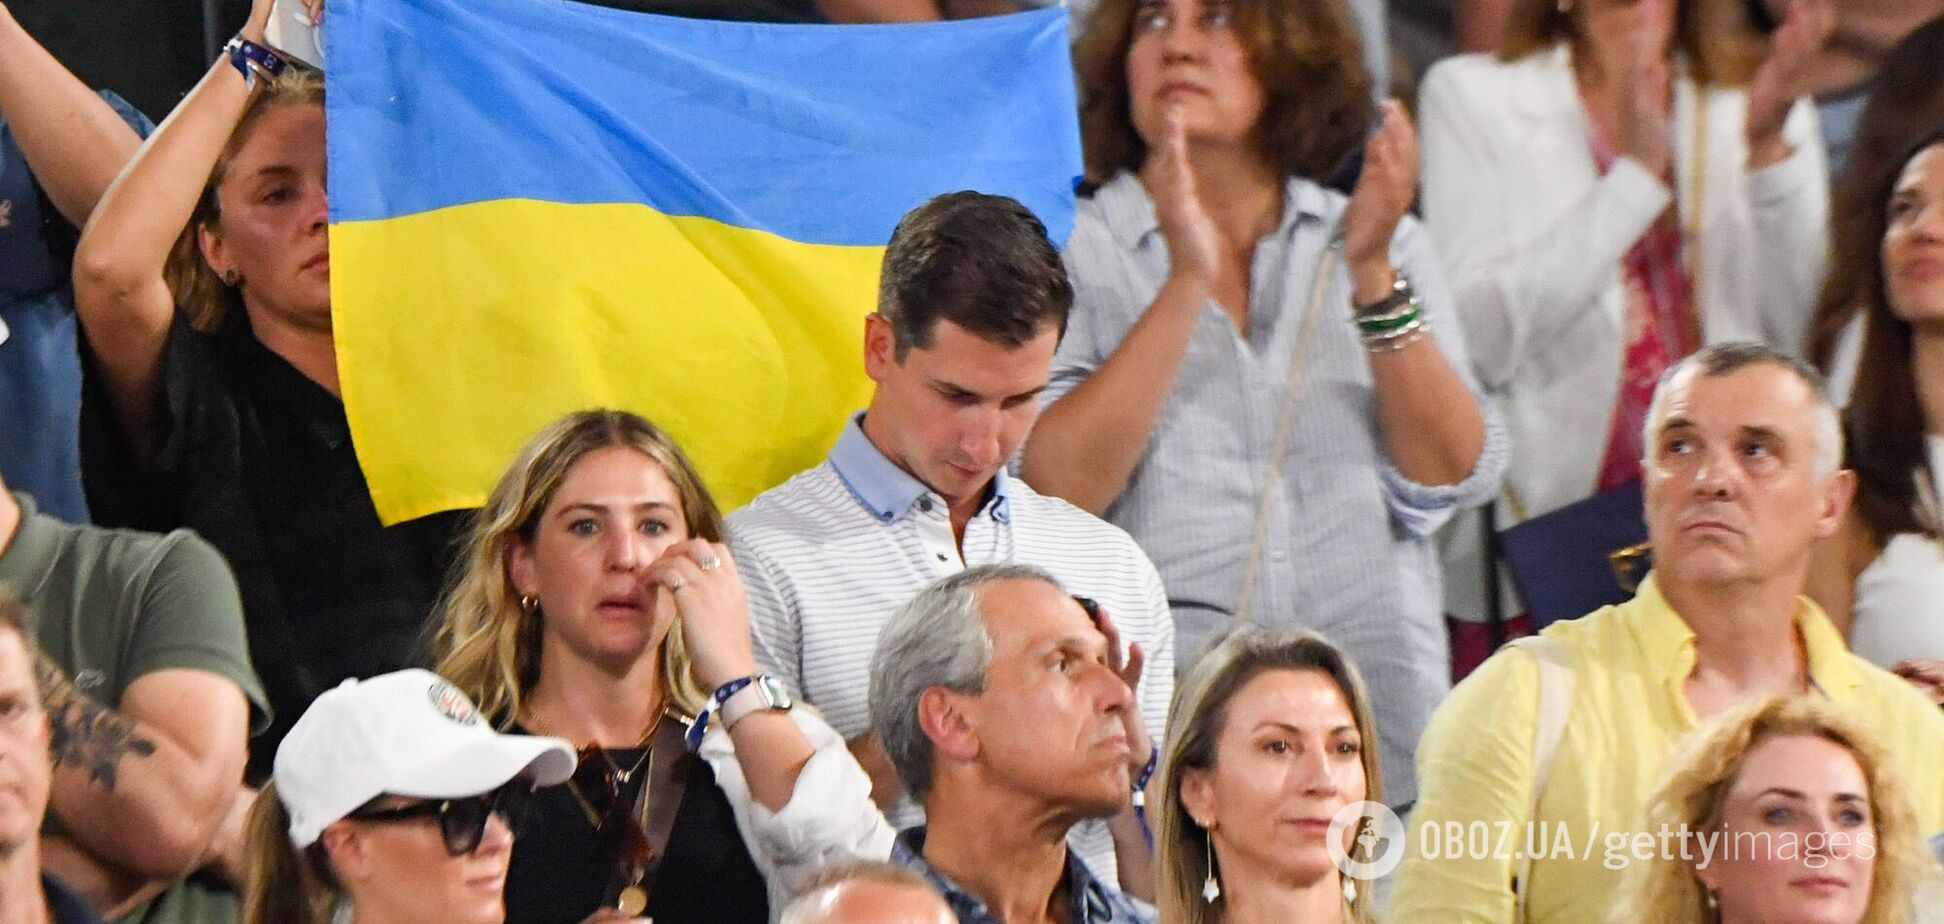 'Нічого не маємо проти'. У FFT відреагували на наругу над прапором України на Roland Garros